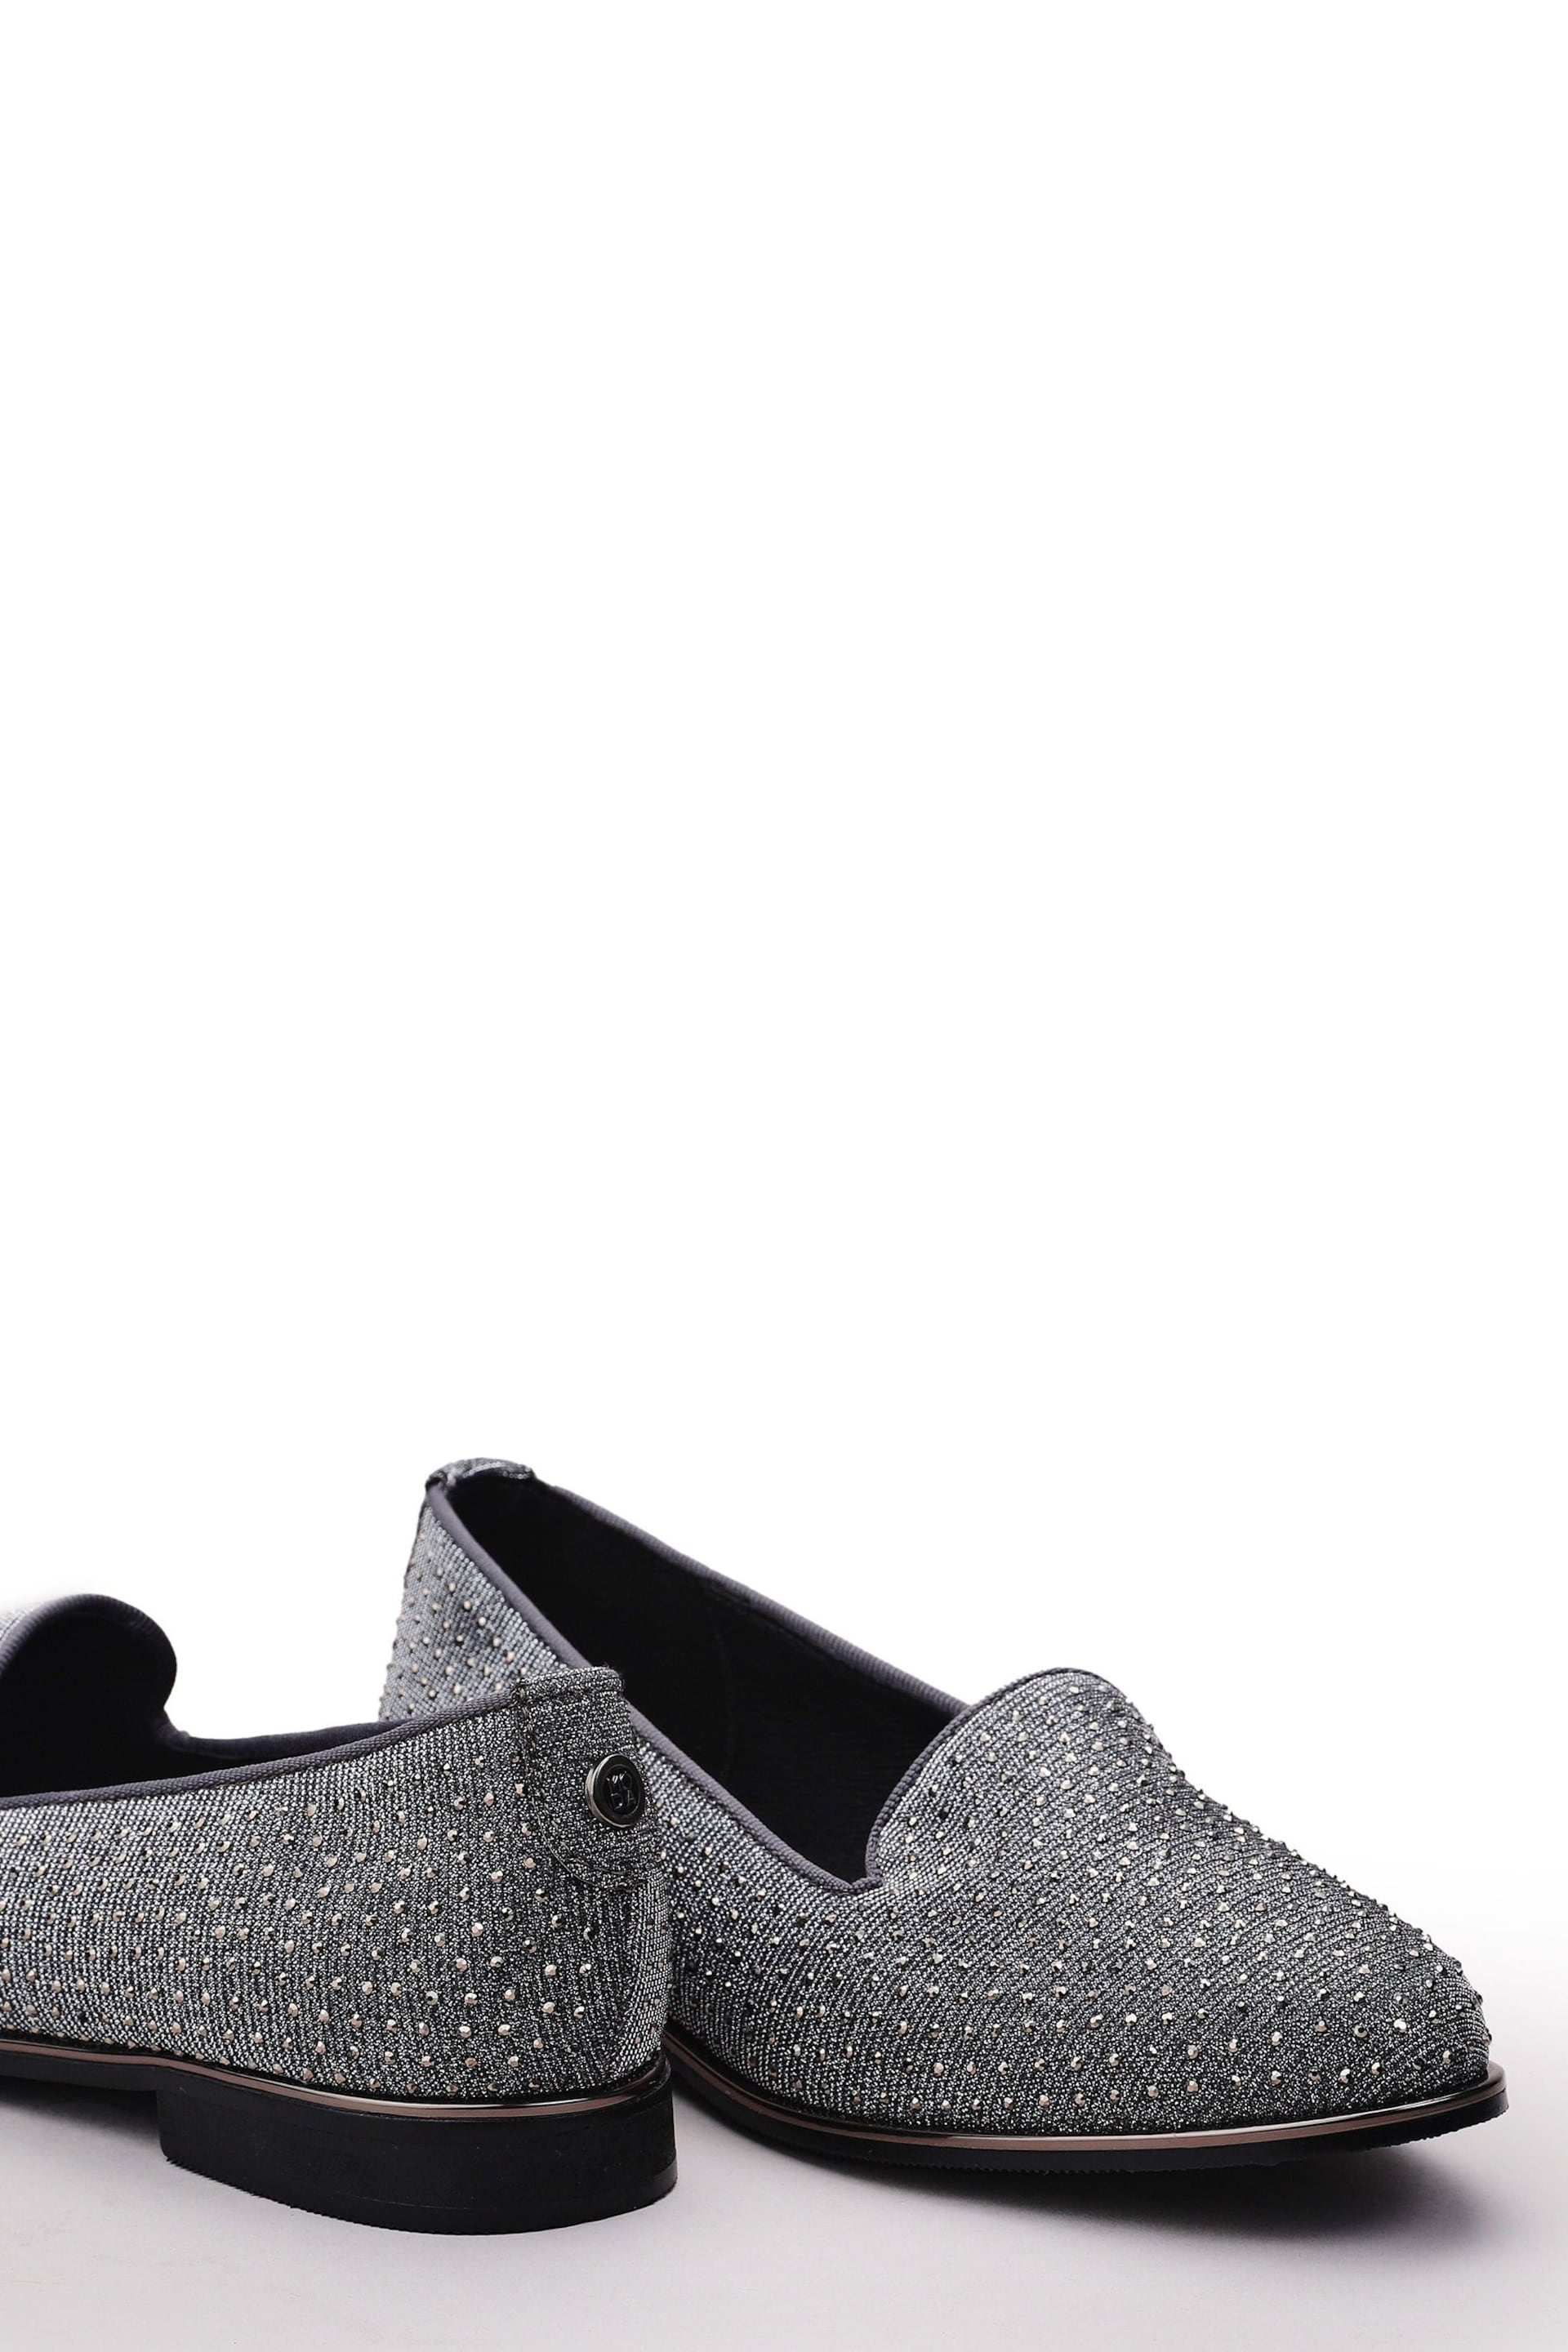 Moda in Pelle Grey Emmas Slip Ons Embellished Smart Shoes - Image 4 of 4